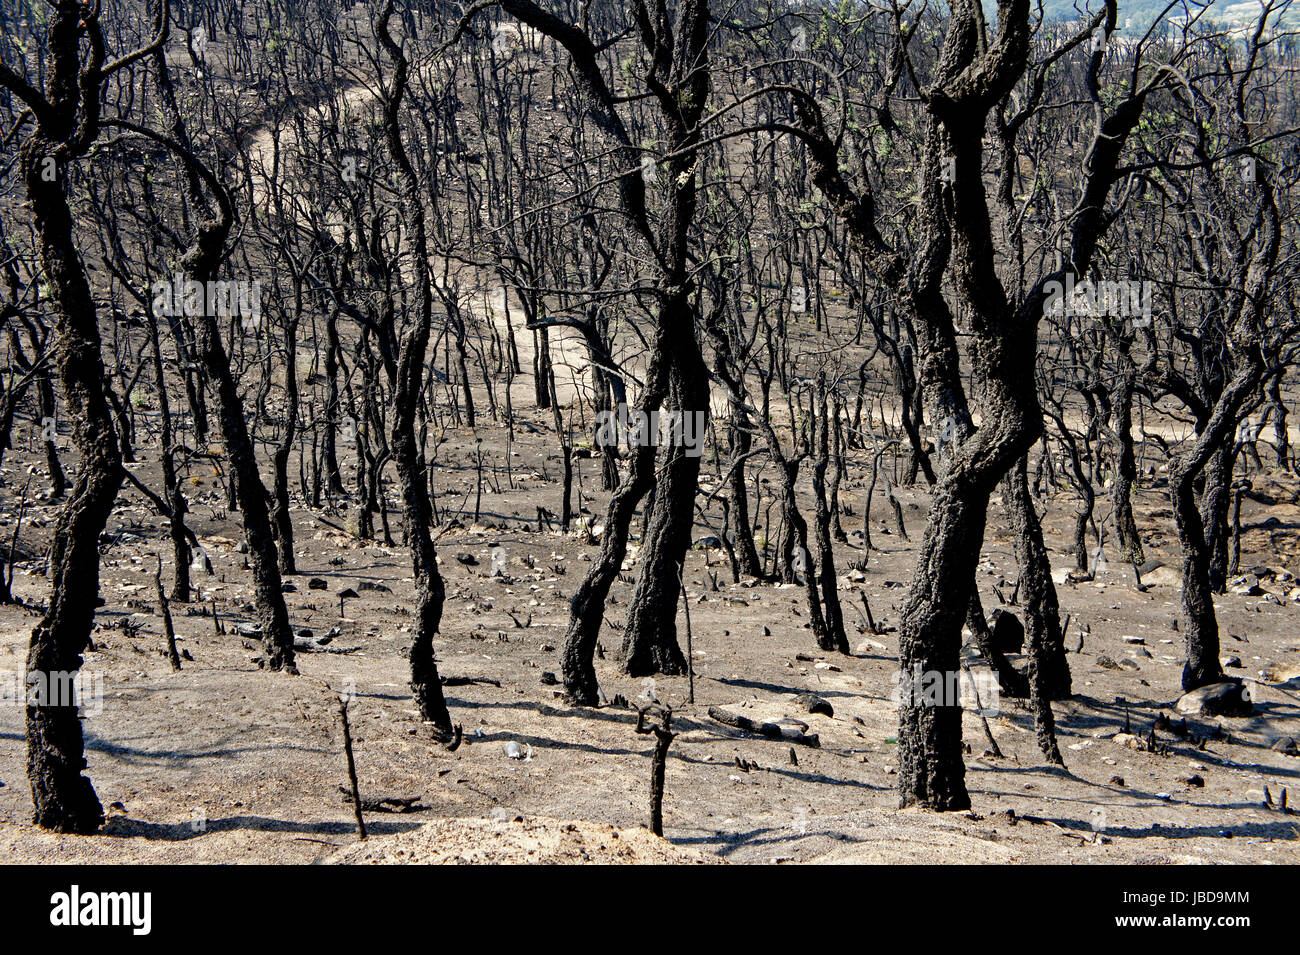 Wald nahe la jonquera, spanisch-franzoesisches grenzgebiet, nach waldbraenden sommer 2012, verkohlte baeume Foto Stock